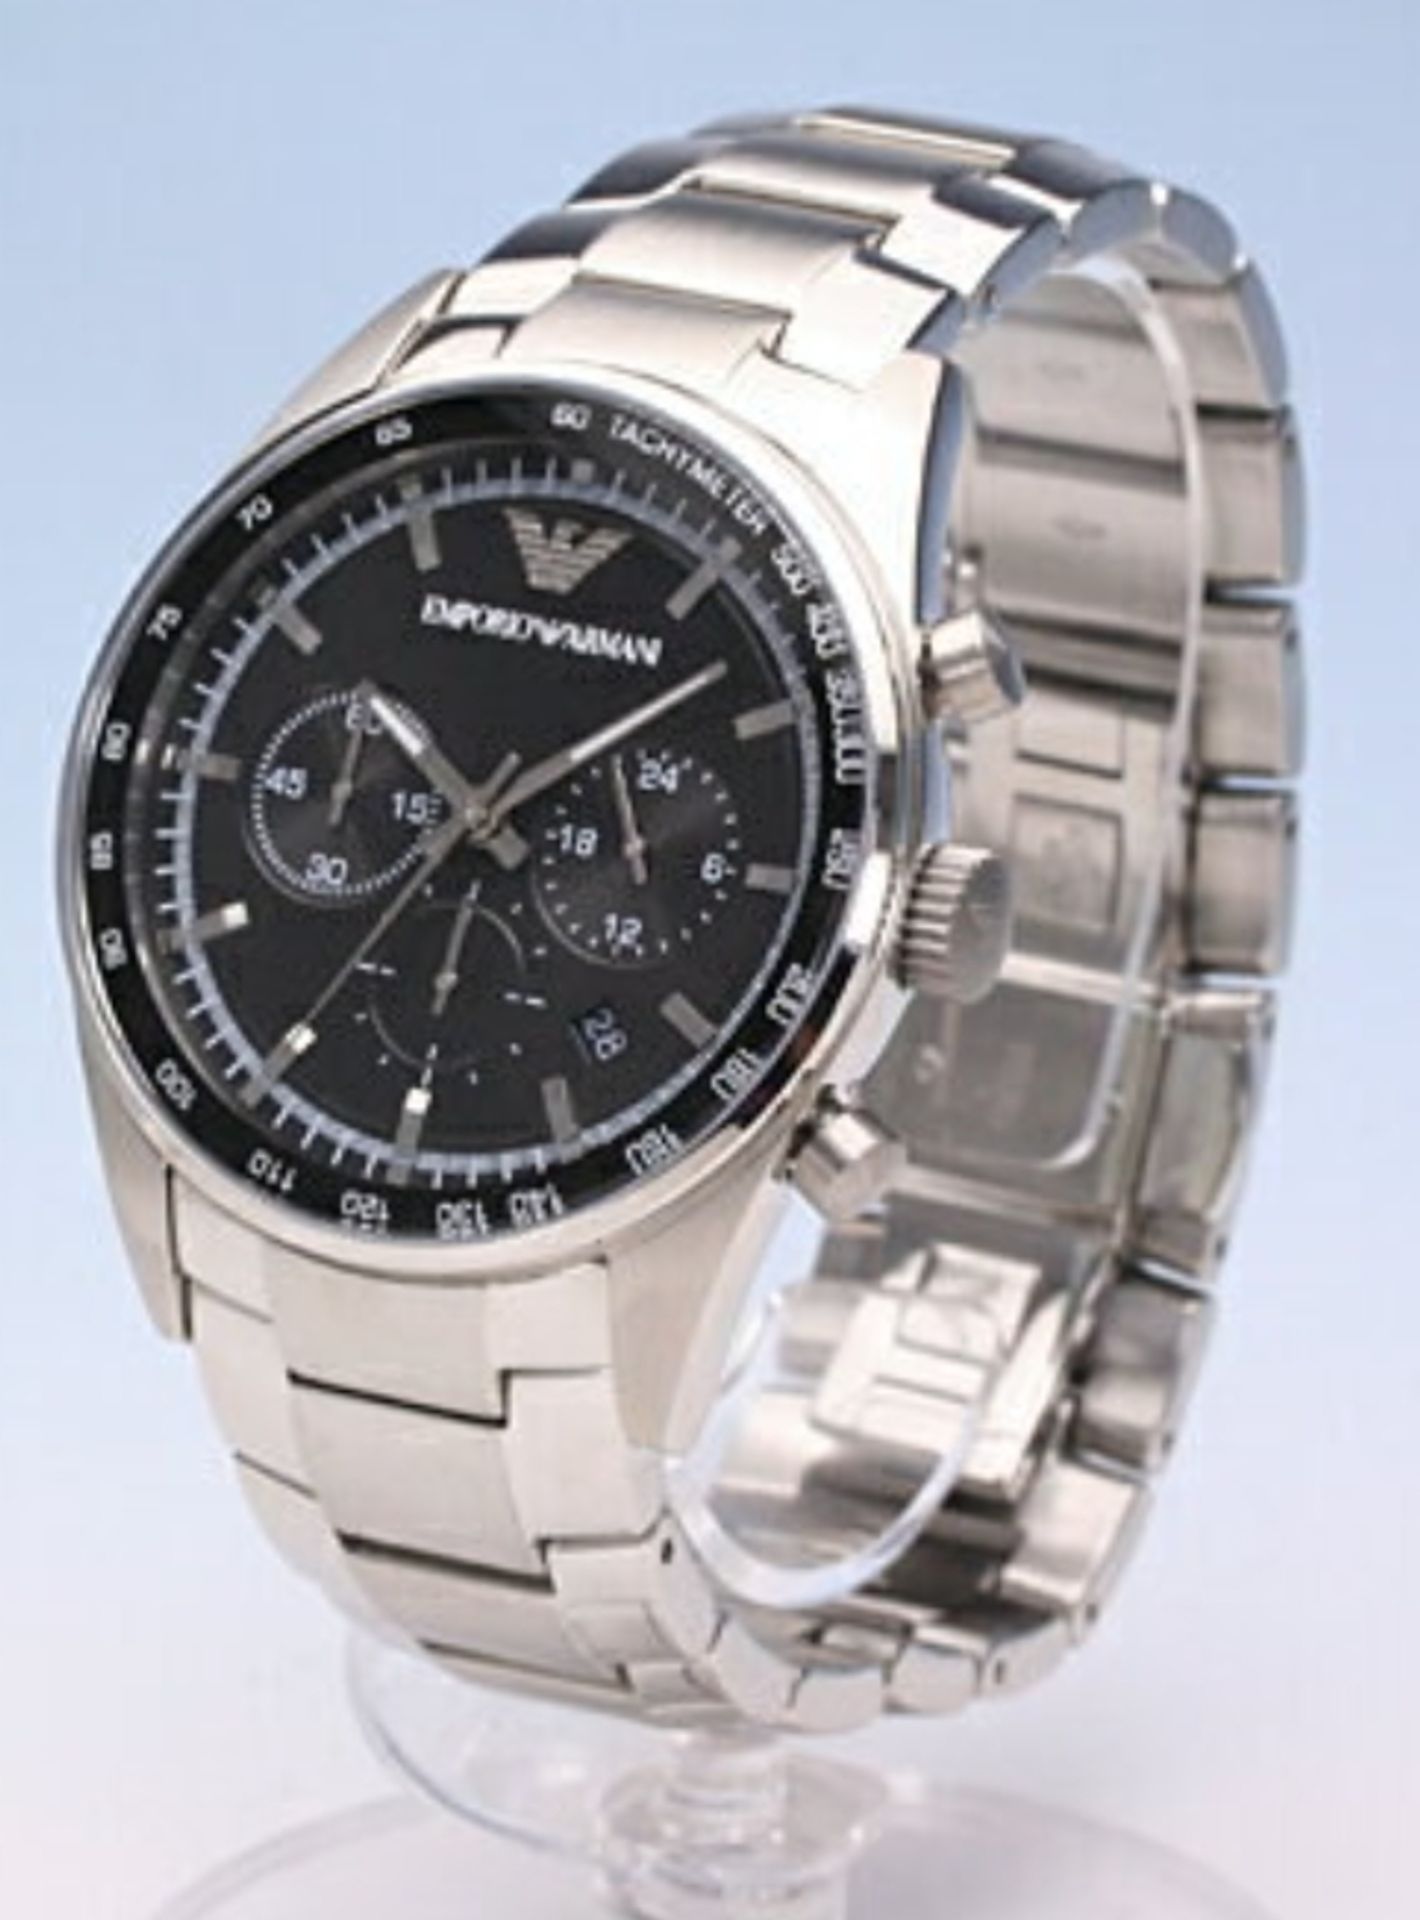 Emporio Armani AR5980 Men's Sportivo Black Dial Silver Bracelet Quartz Chronograph Watch - Image 6 of 8